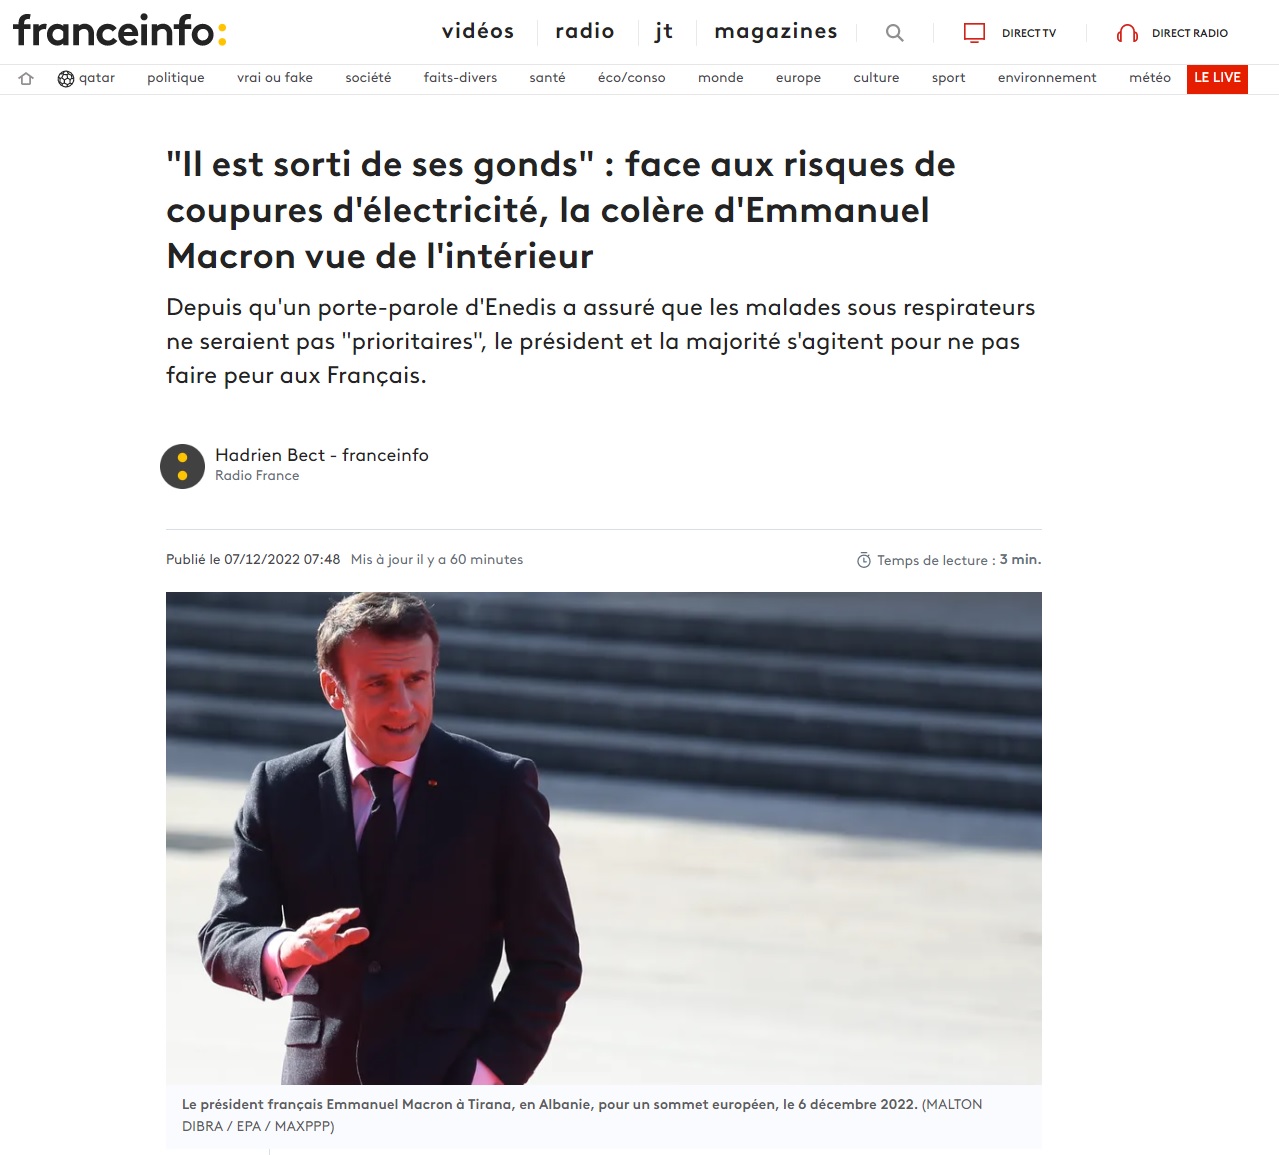 Finalement, le président Macron goûte peu la sobriété énergétique